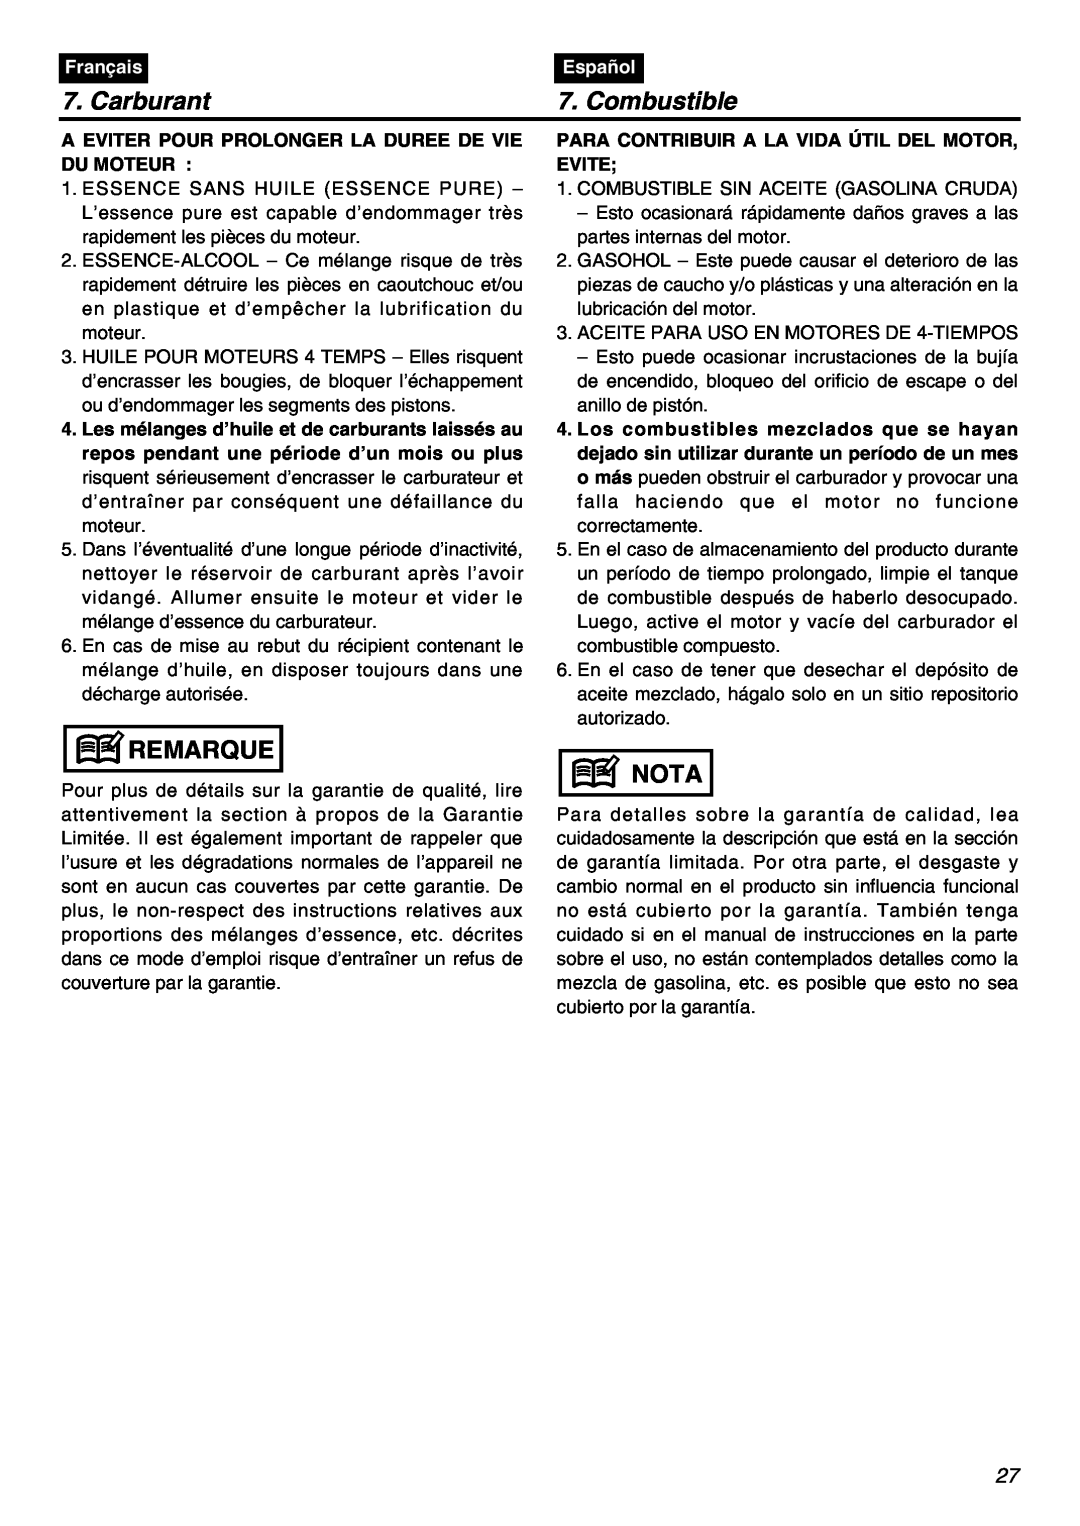 RedMax EBZ8001RH manual Carburant, Combustible, Remarque, Nota, Français, Español 